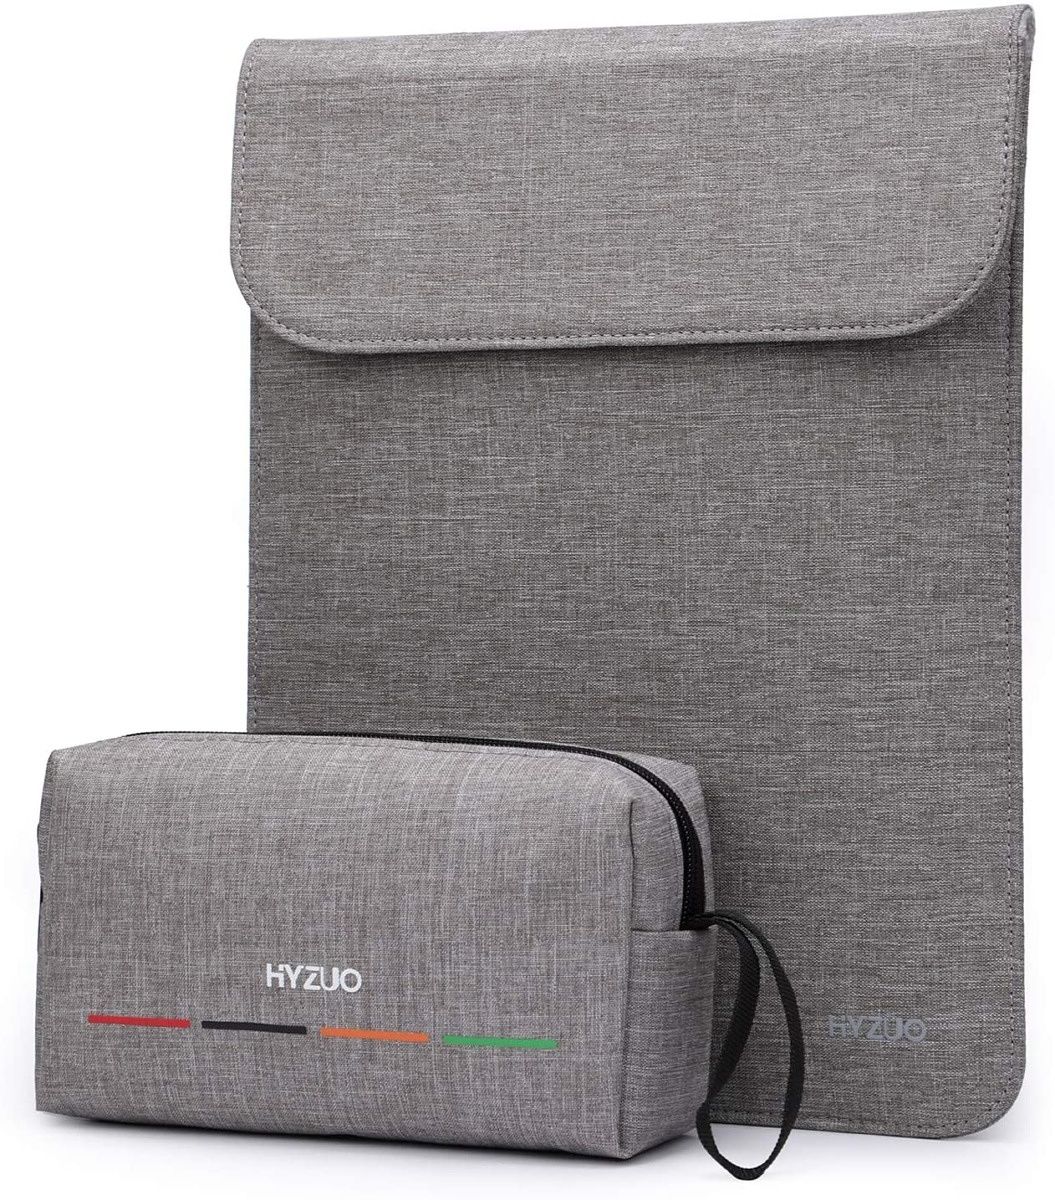 Diese HYZUO-Hülle bietet grundlegenden Schutz für Ihren Laptop, wird aber auch mit einer zusätzlichen Tasche für Zubehör, ein Ladegerät oder alles andere geliefert, was Sie mitnehmen müssen.  Außerdem gibt es ihn in vielen verschiedenen Farben.